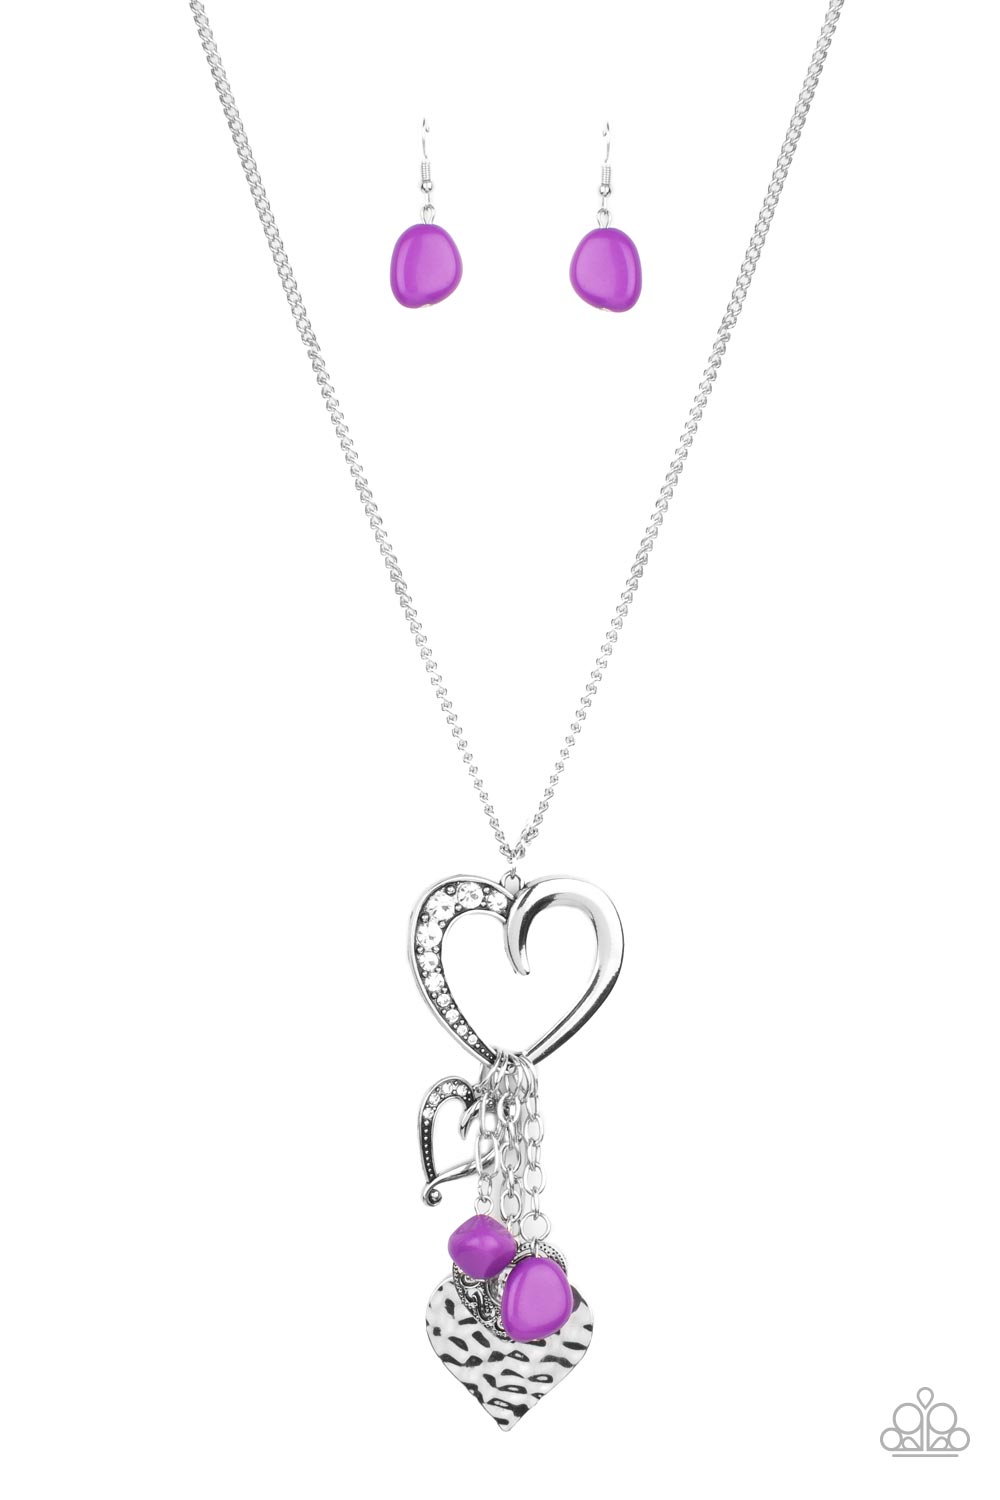 five-dollar-jewelry-flirty-fashionista-purple-paparazzi-accessories